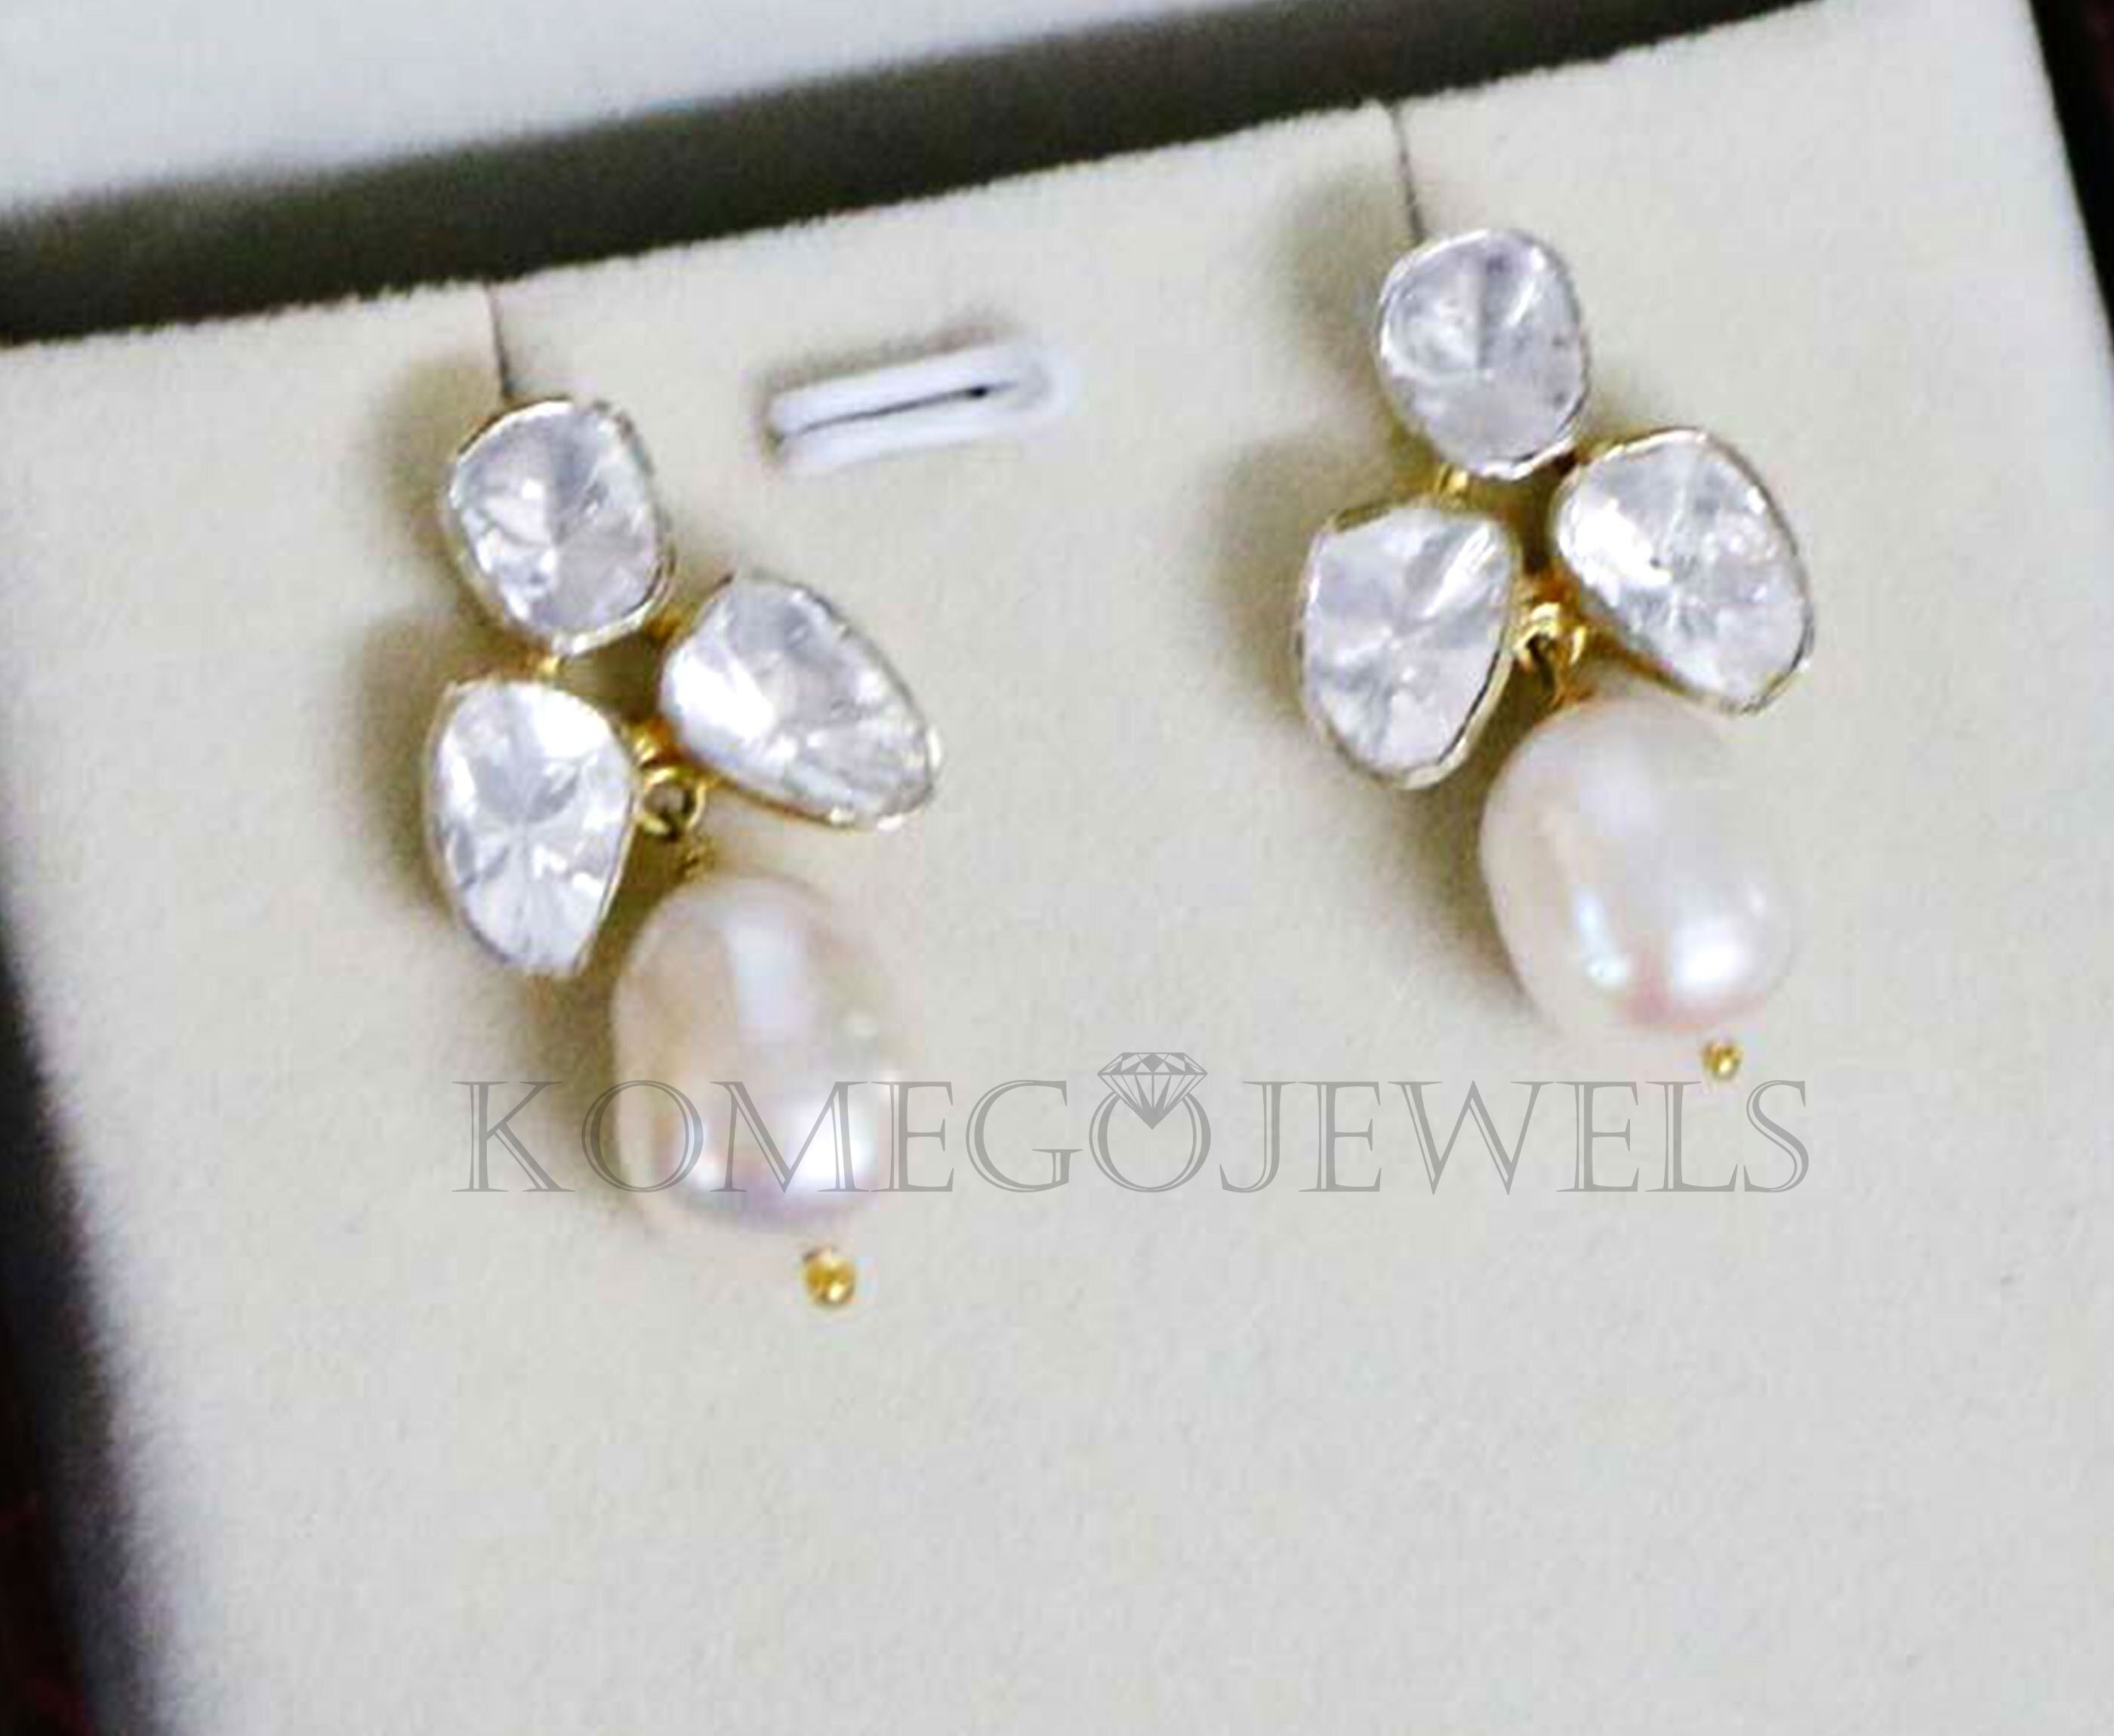 Handmade Jewelry Minimalist Pearl Earrings in Sterling Silver 925